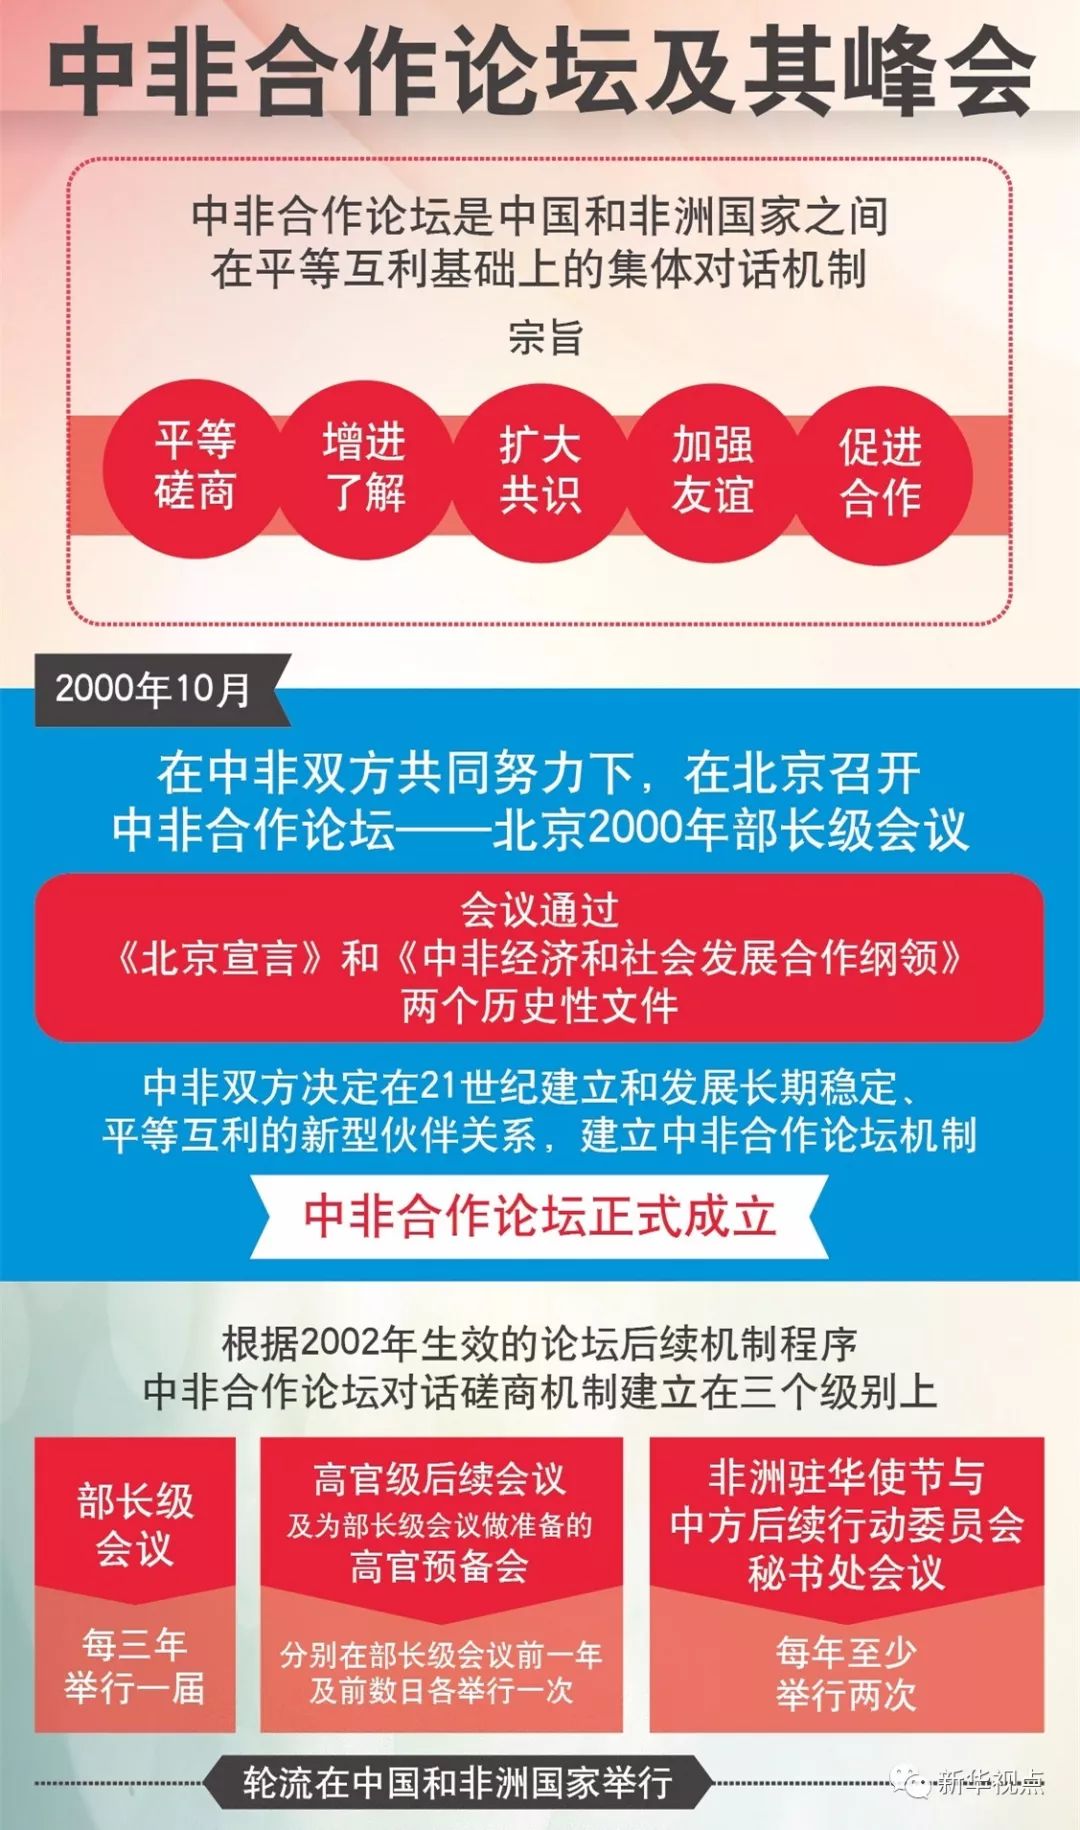 博鳌亚洲论坛年会将启 2018中国4大主场外交